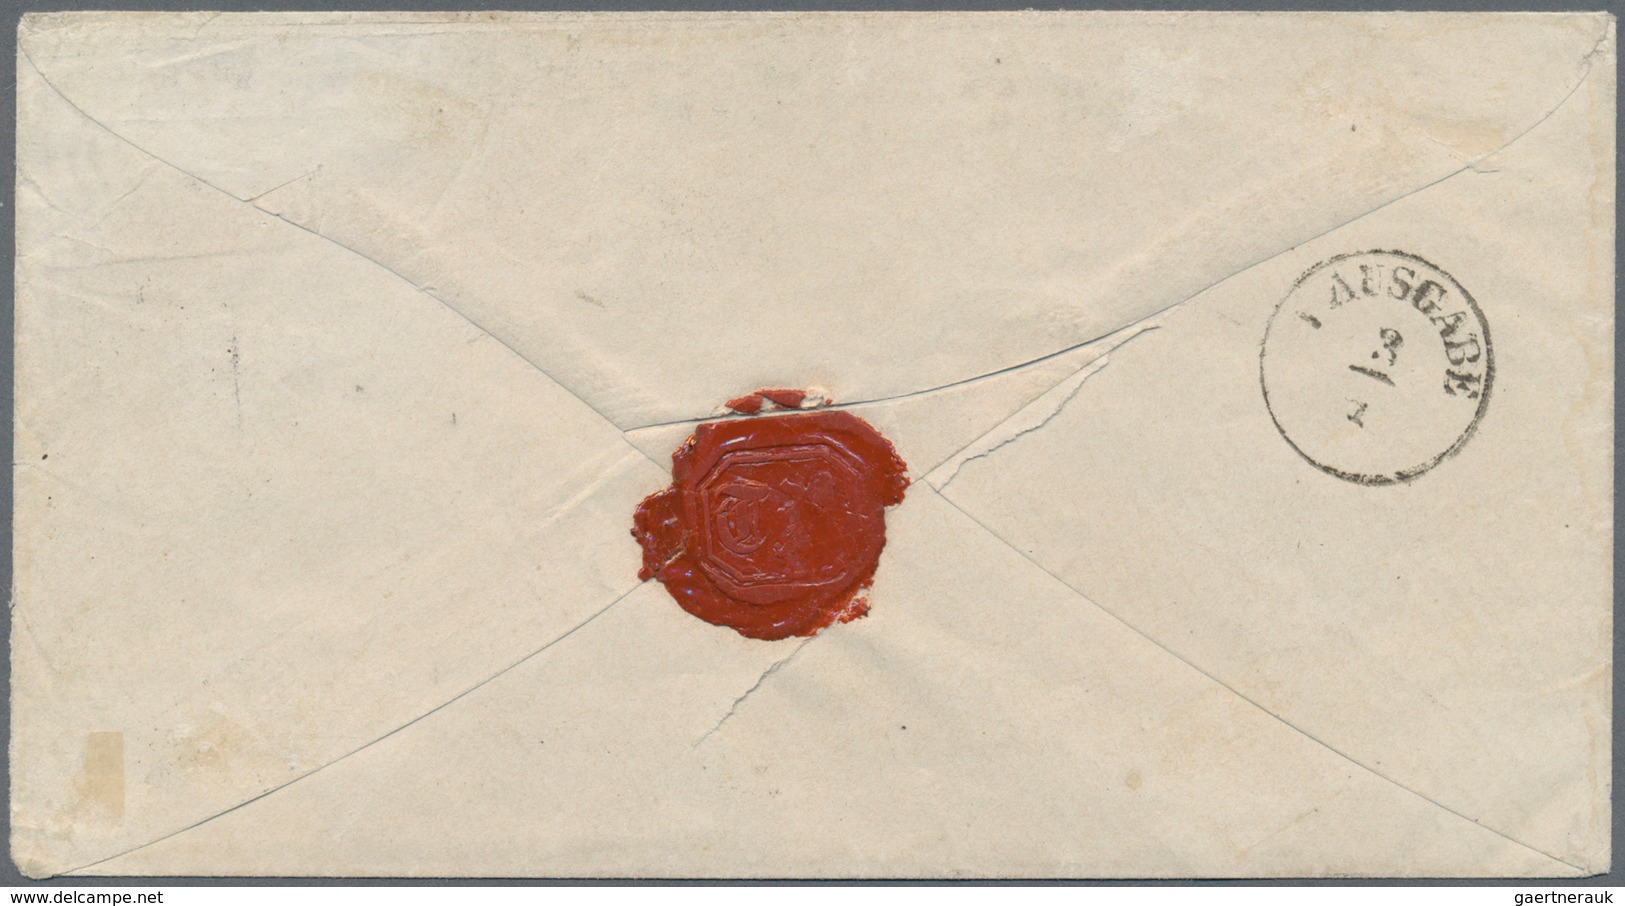 Deutsches Reich - Brustschild: 1872 GA-Ausschnitt 1 Gr. Auf Brief Vom ZWEITEN VERWENDUNGSTAG "MUTZSC - Unused Stamps